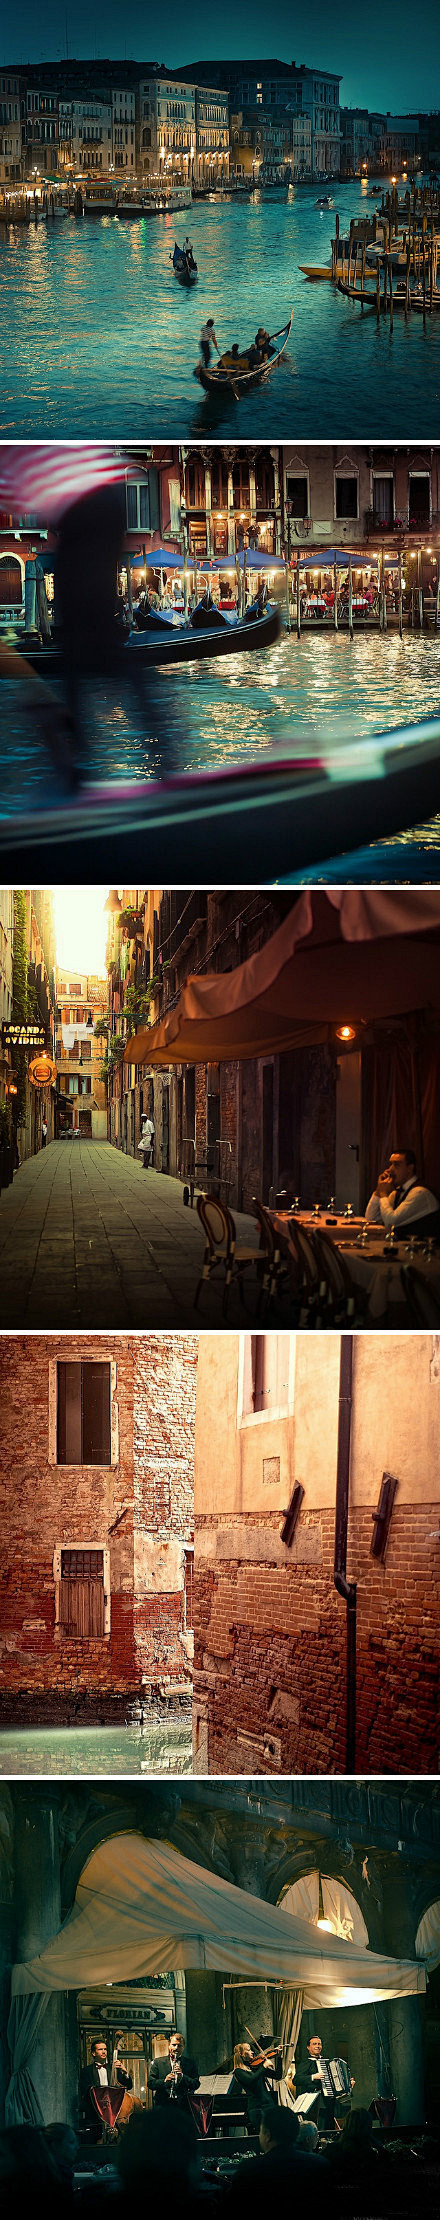 威尼斯---如果在这里邂逅，那么迷路又有...